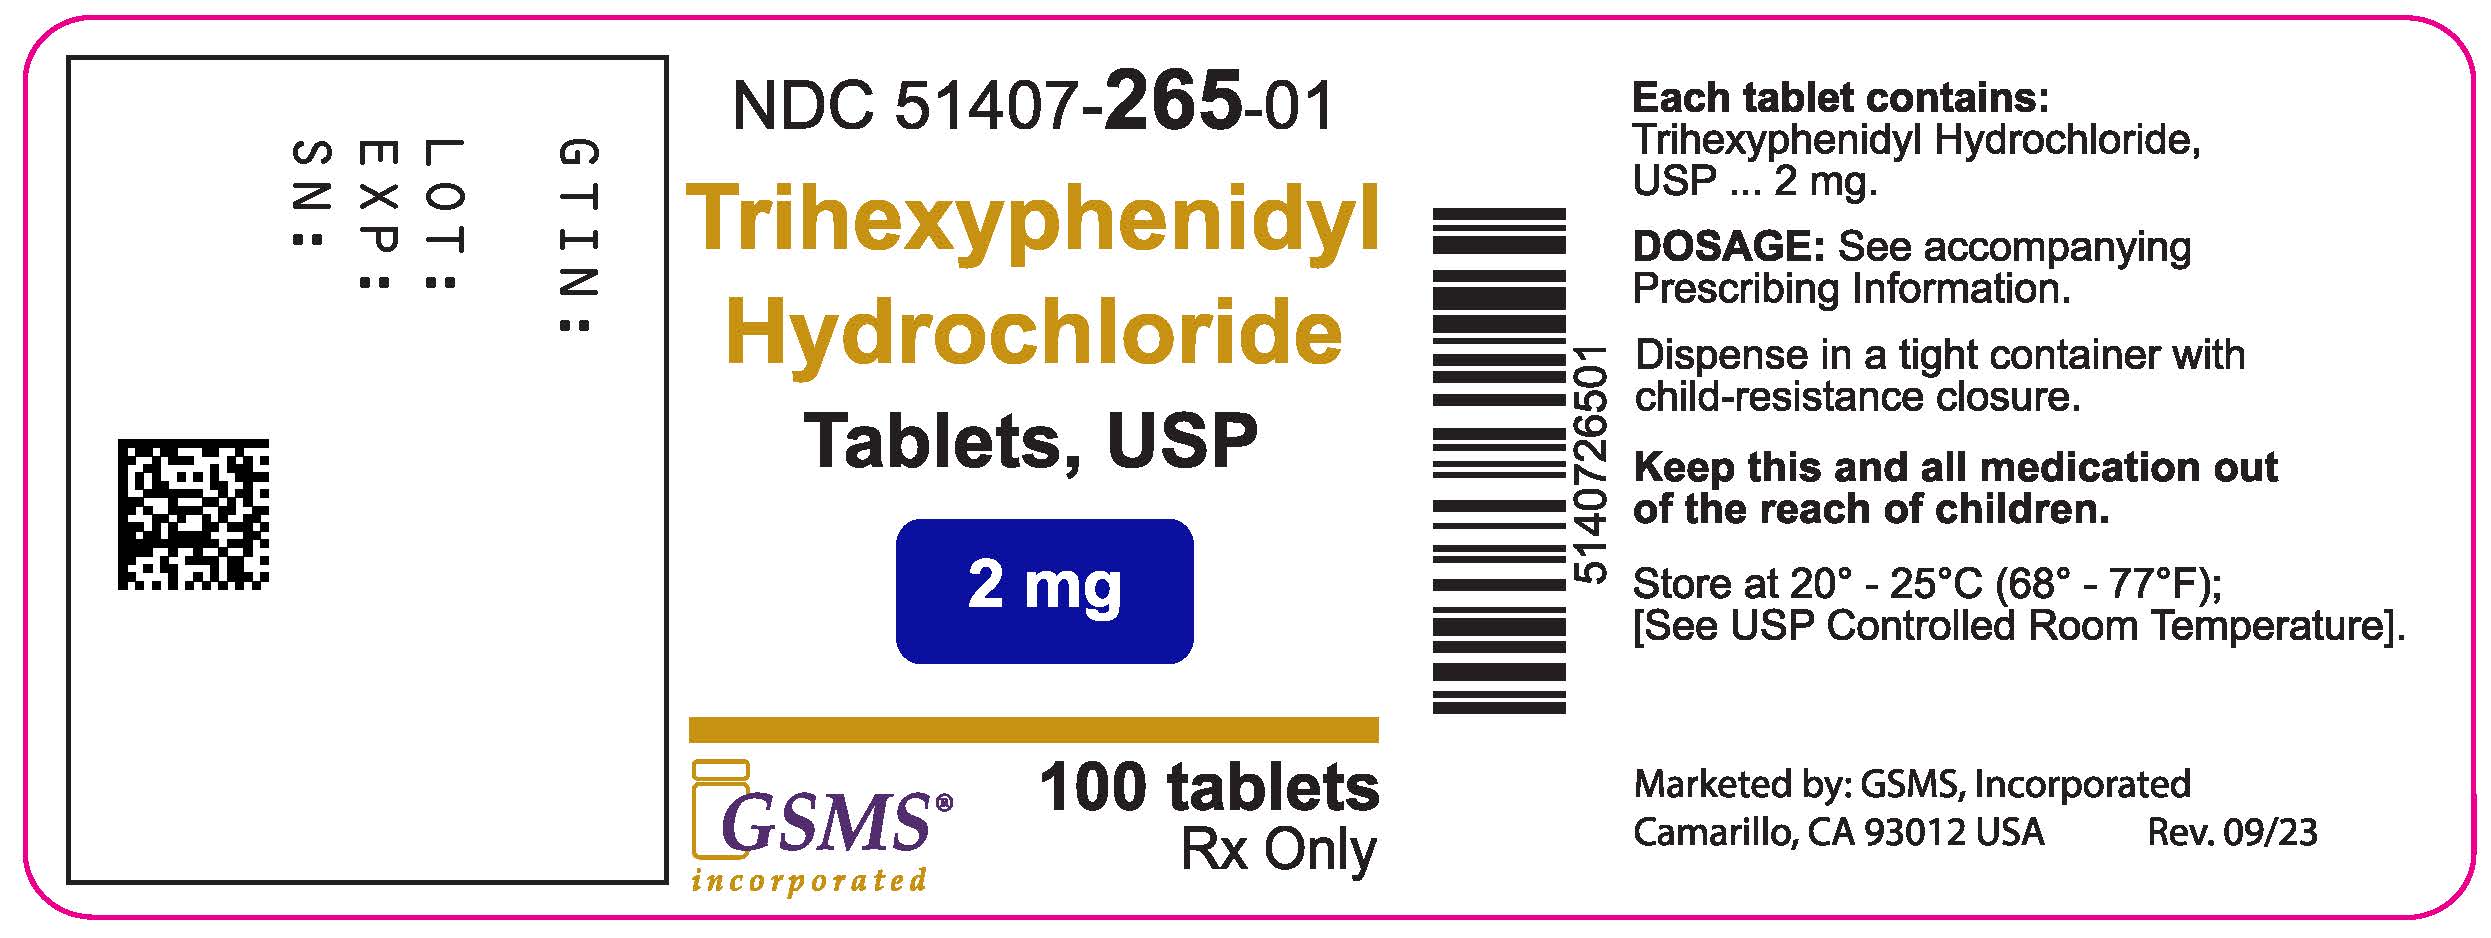 51407-265-01LB - Trihexyphenidyl Hydrochloride Tablets - Novitium - Rev 0923.jpg